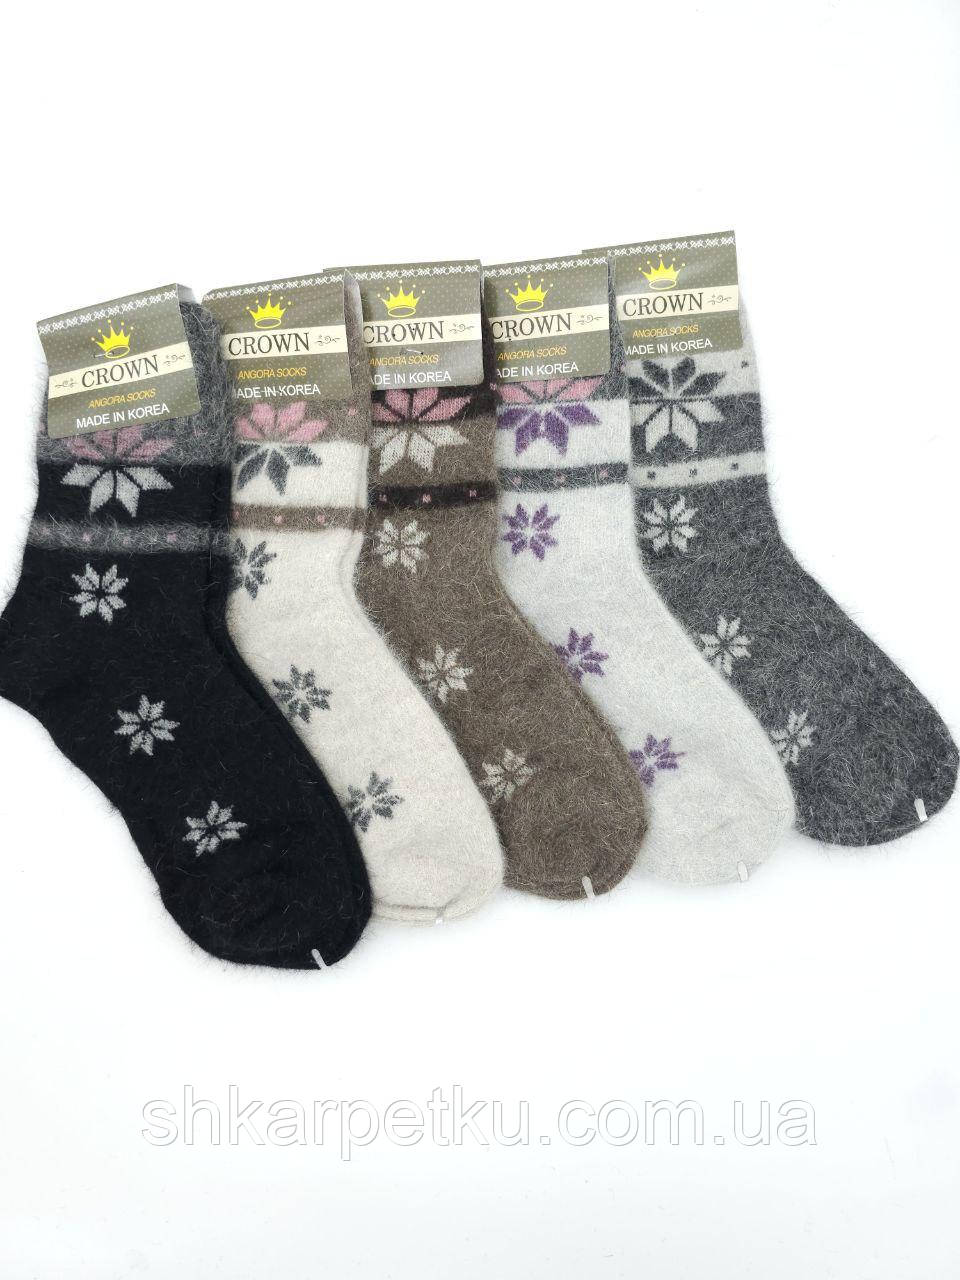 Жіночі носки шкарпетки теплі Crown з ангори з малюнком сніжинки 35-39 5 пар/уп мікс кольорів